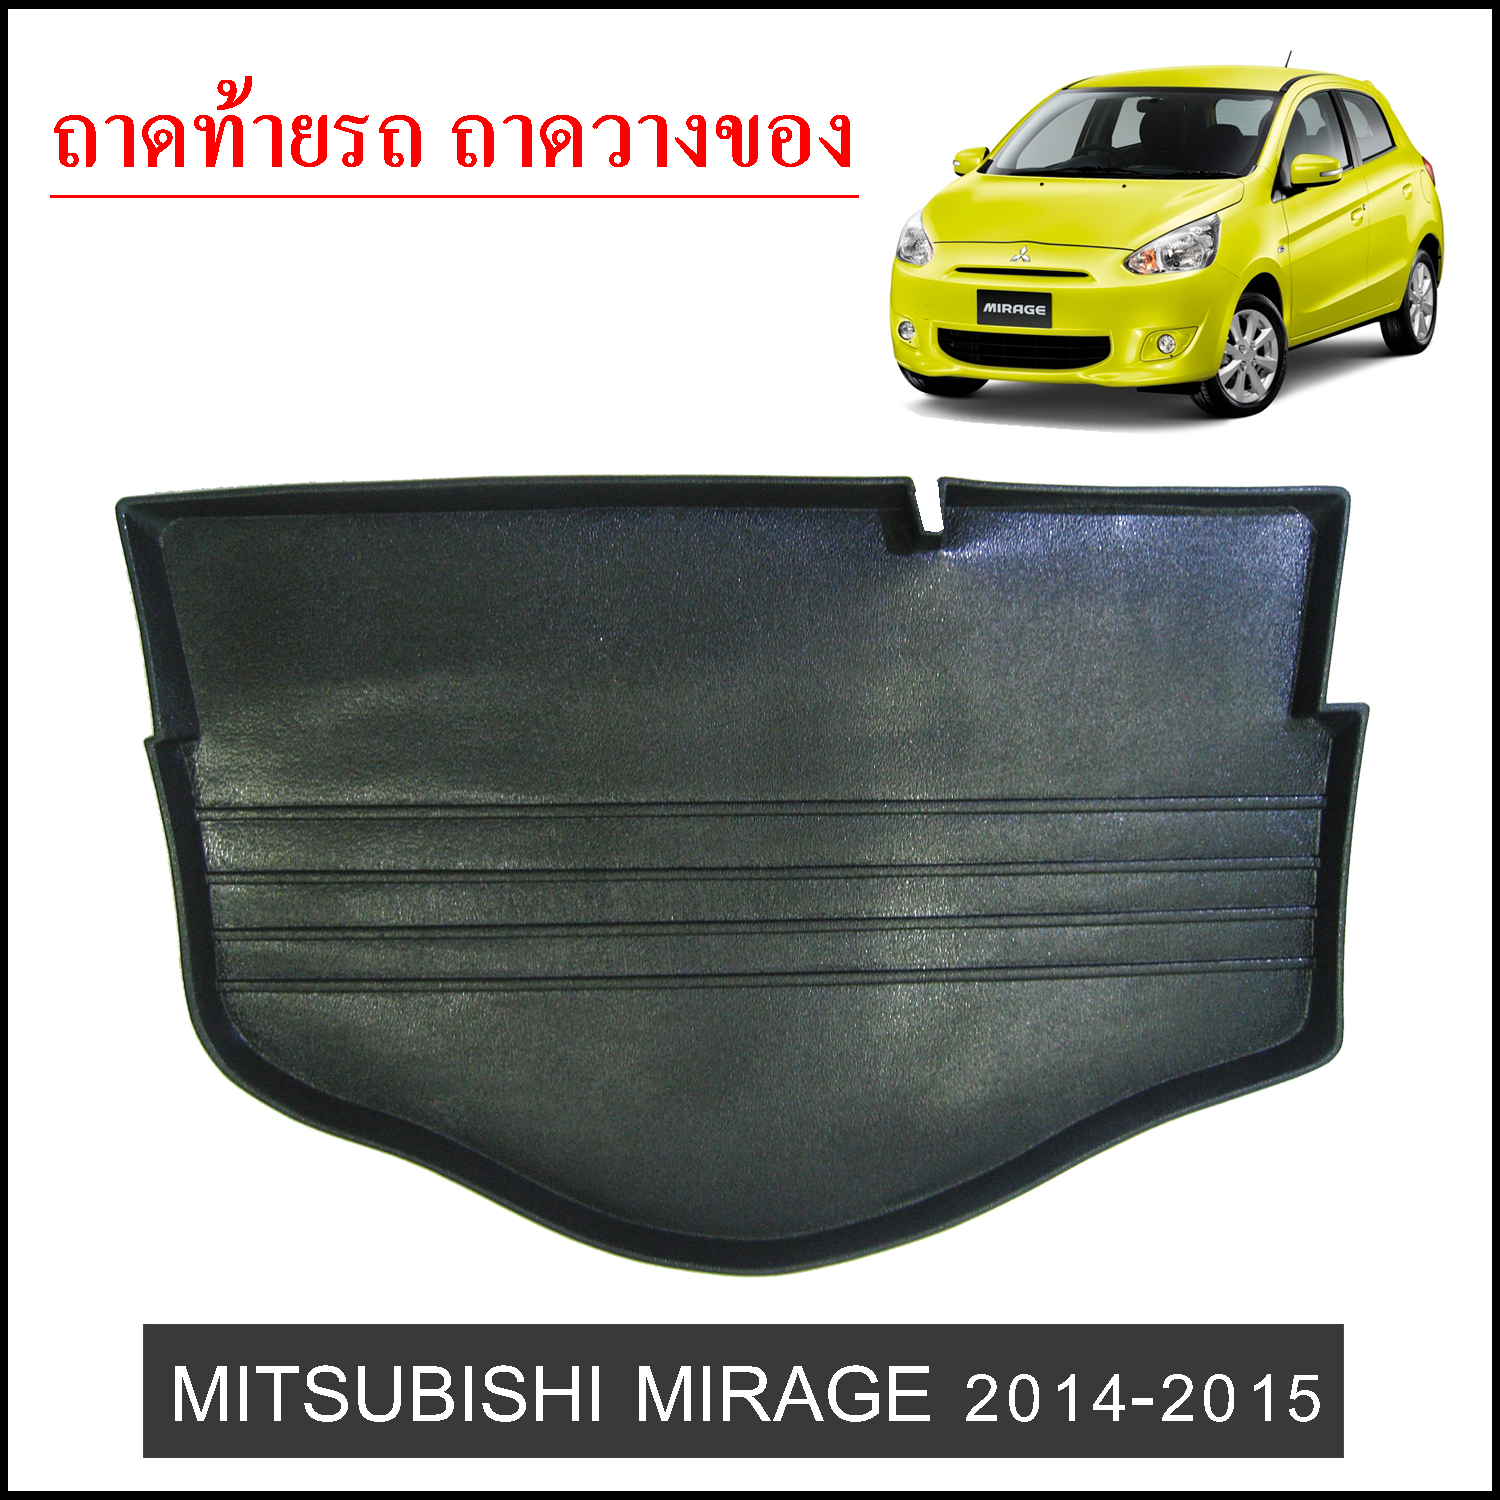 Mitsubishi Mirage 2014-2015